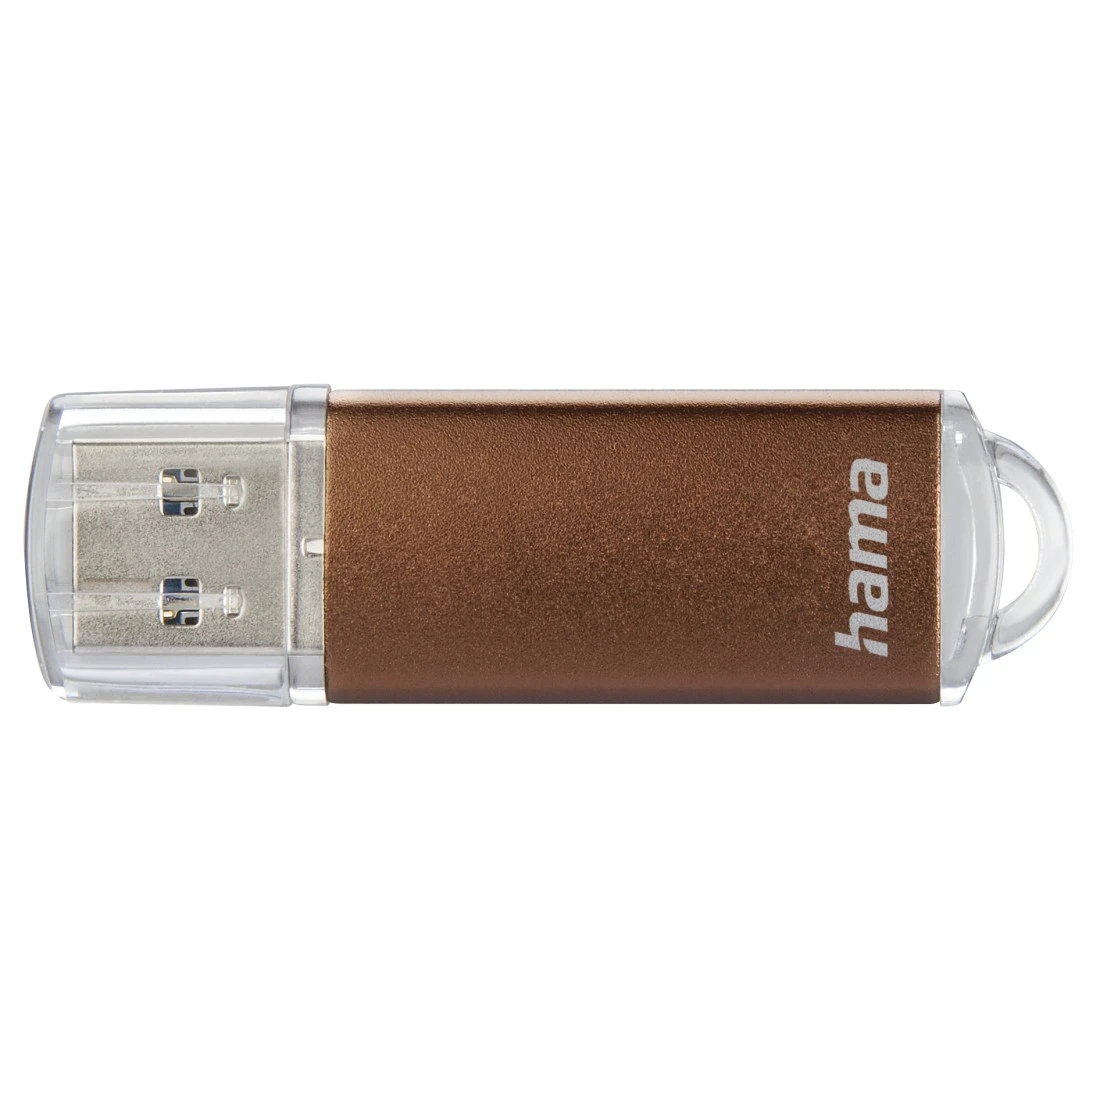 USB-Stick "Laeta", USB 3.0, 64 GB, 70MB/s, Bronze | Hama